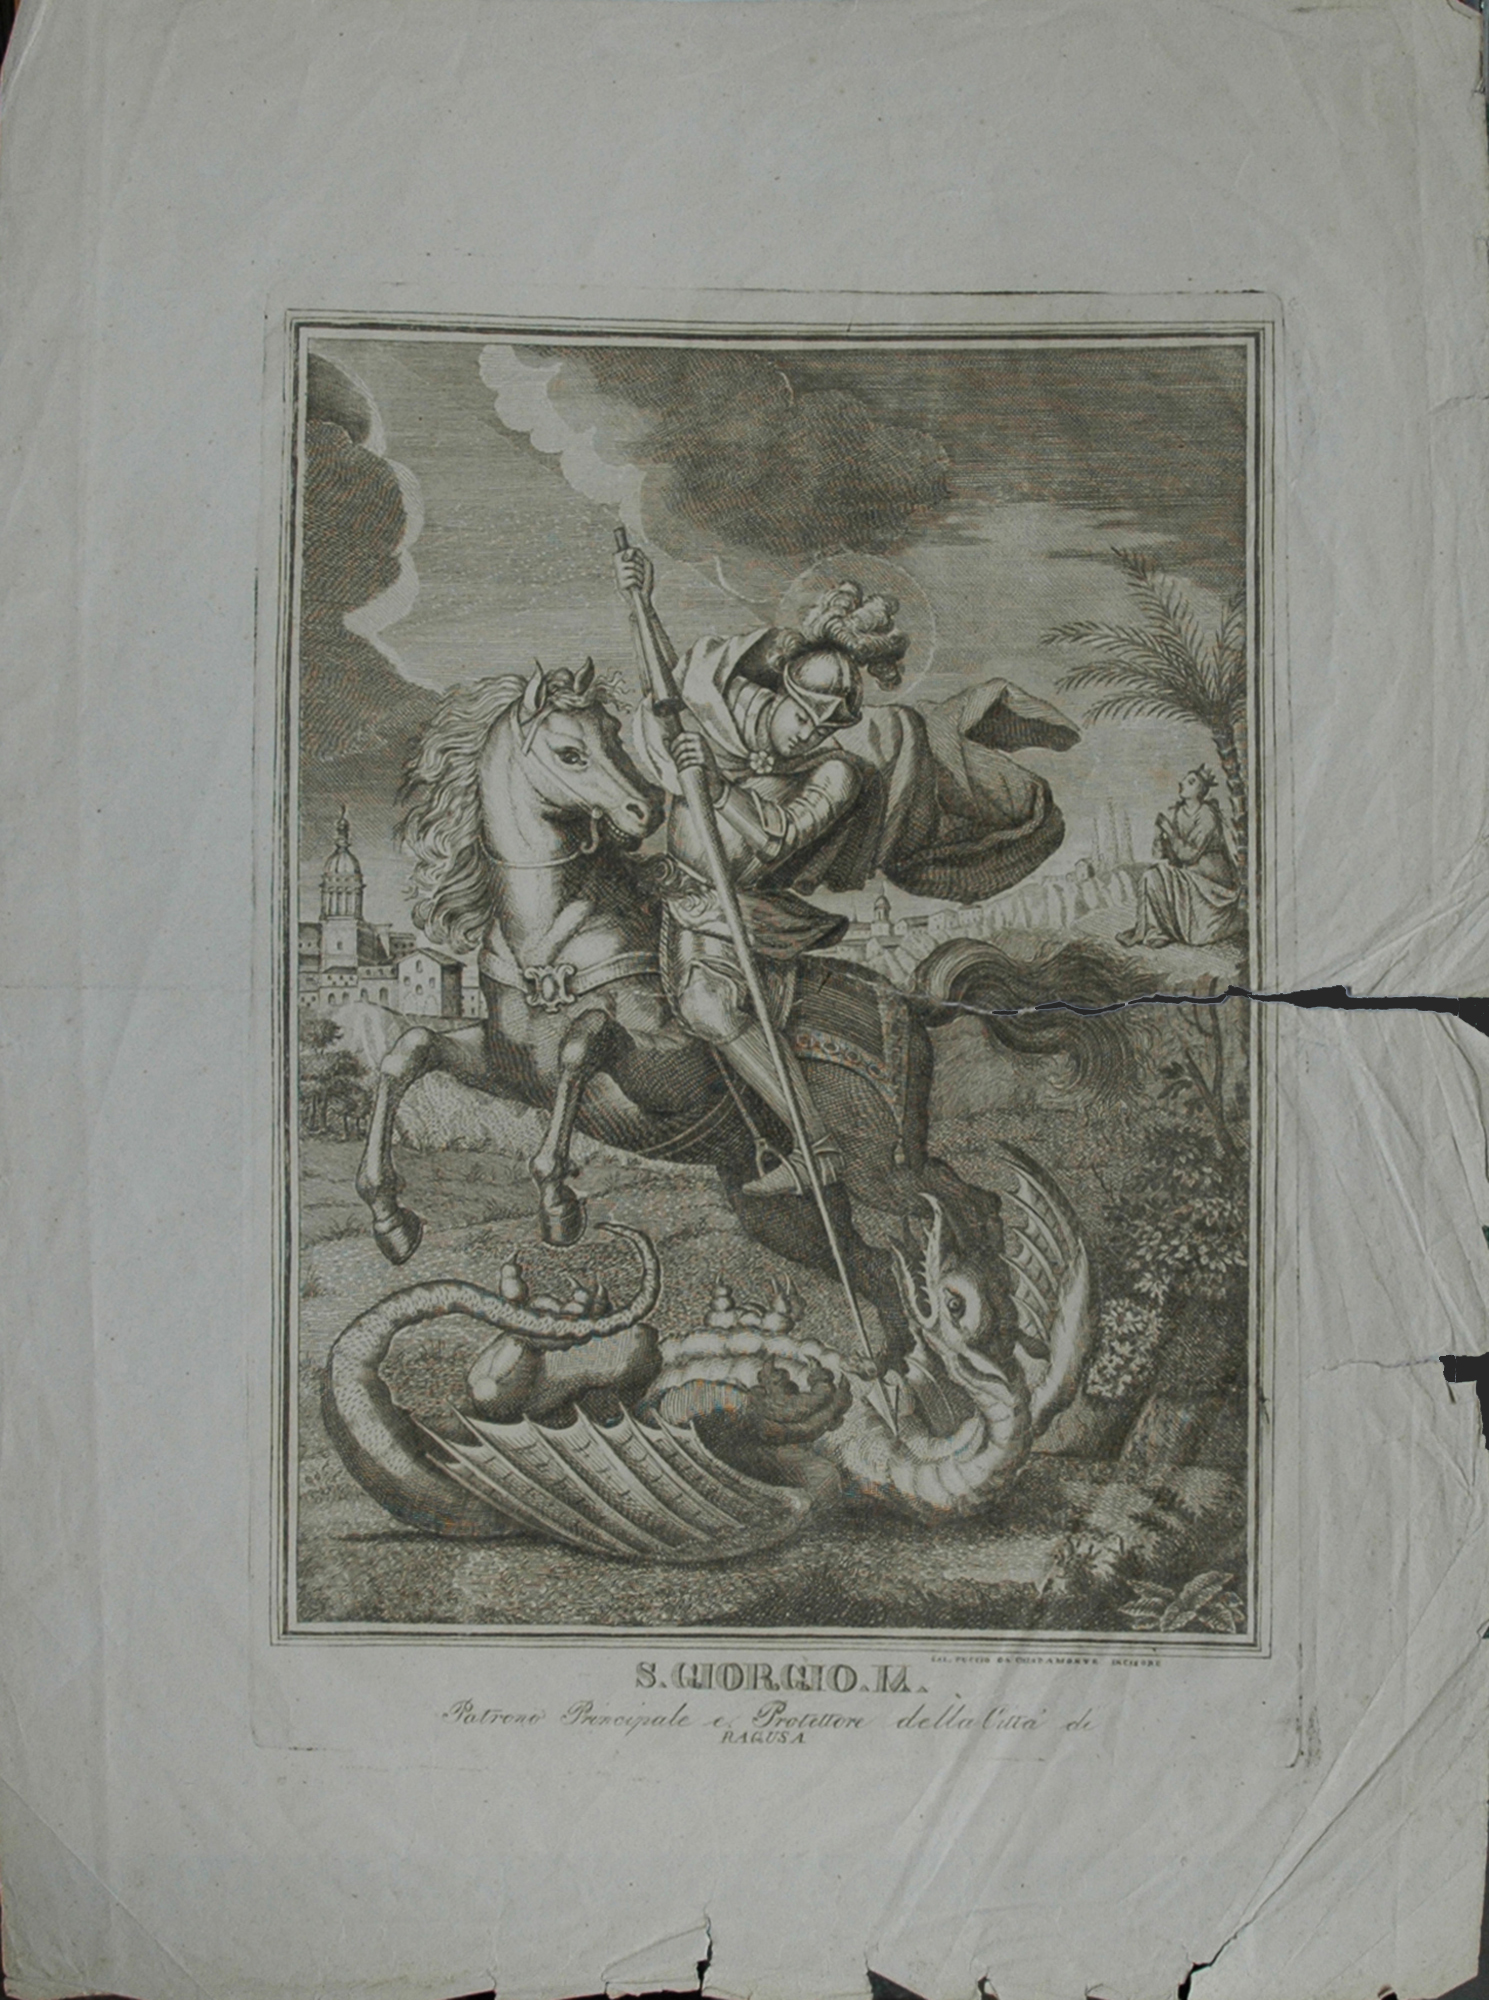 S. Giorgio a cavallo, incisione all’acquaforte di S. Puccio, prima metà XIX secolo, 2017, fotografia digitale